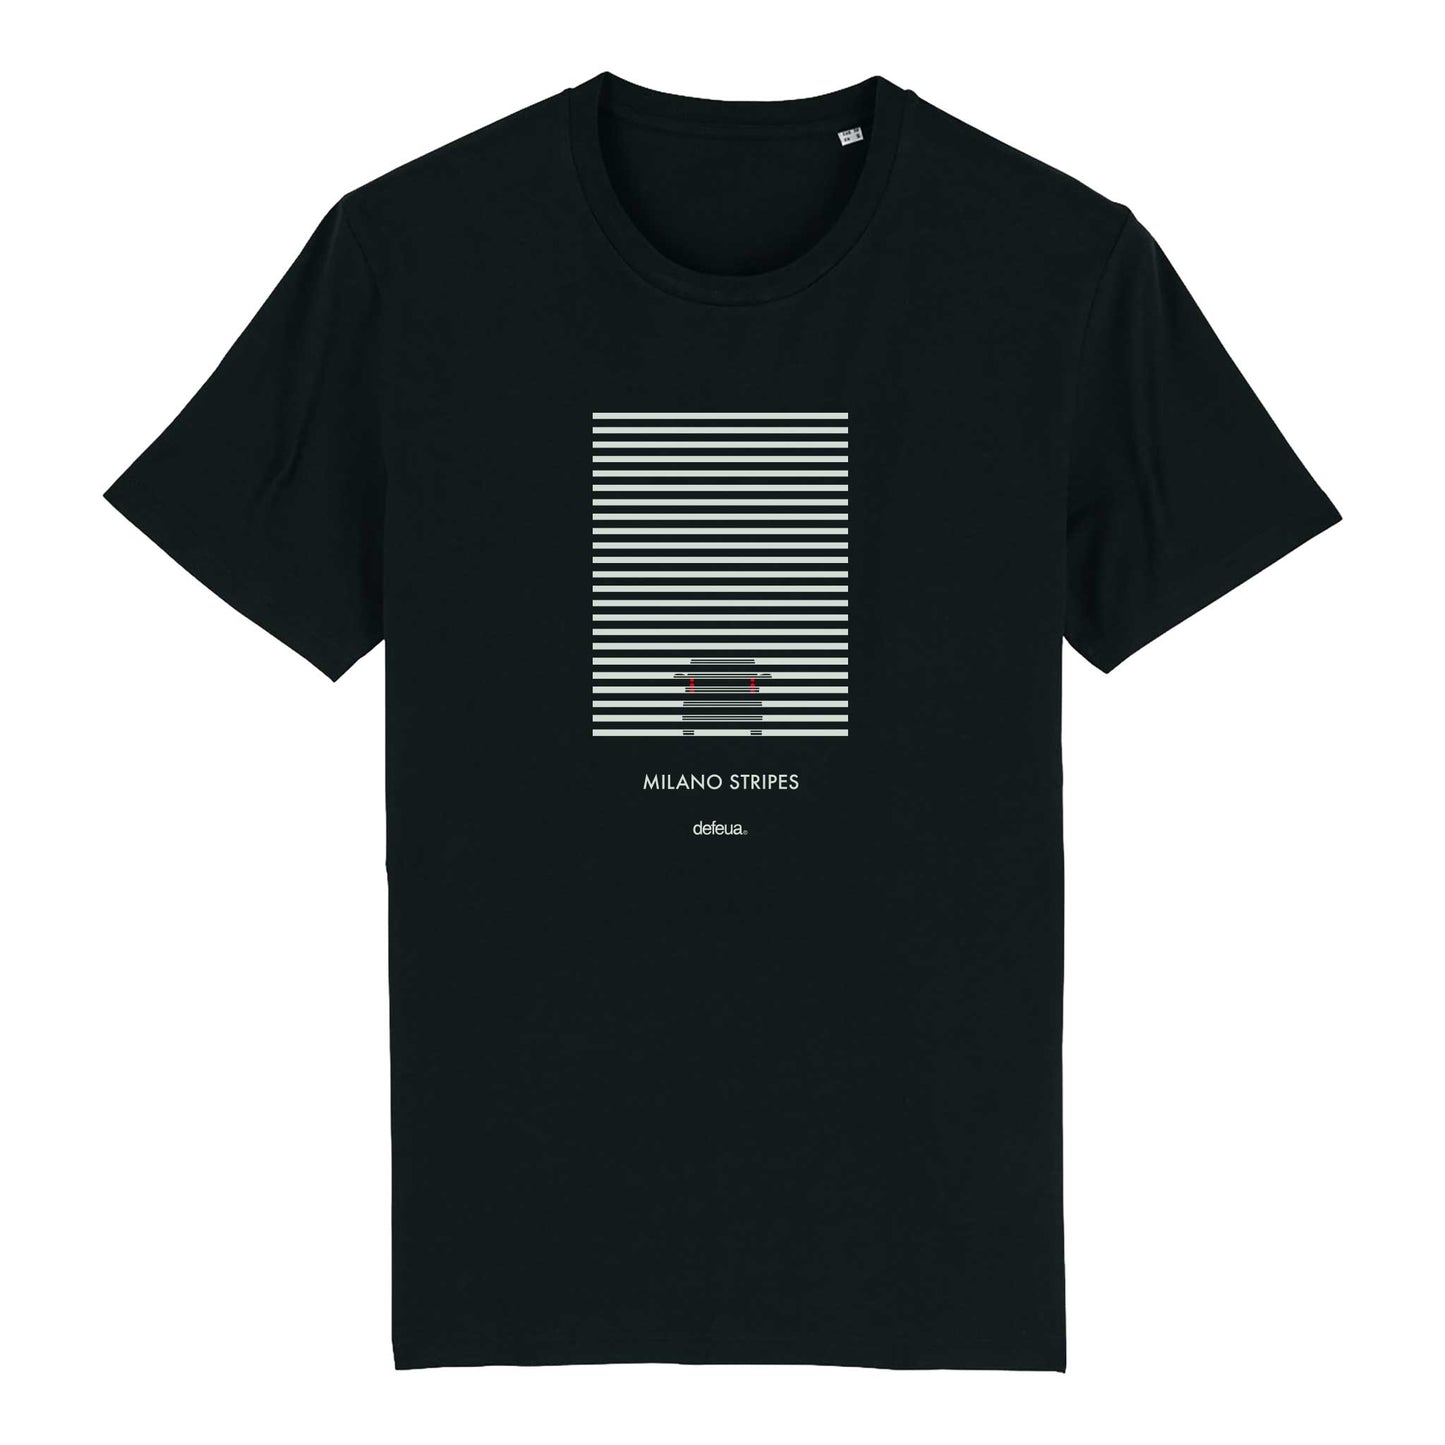 Defeua® tshirt MILANO, la t-shirt dalle strisce ironiche in 100% cotone biologico 